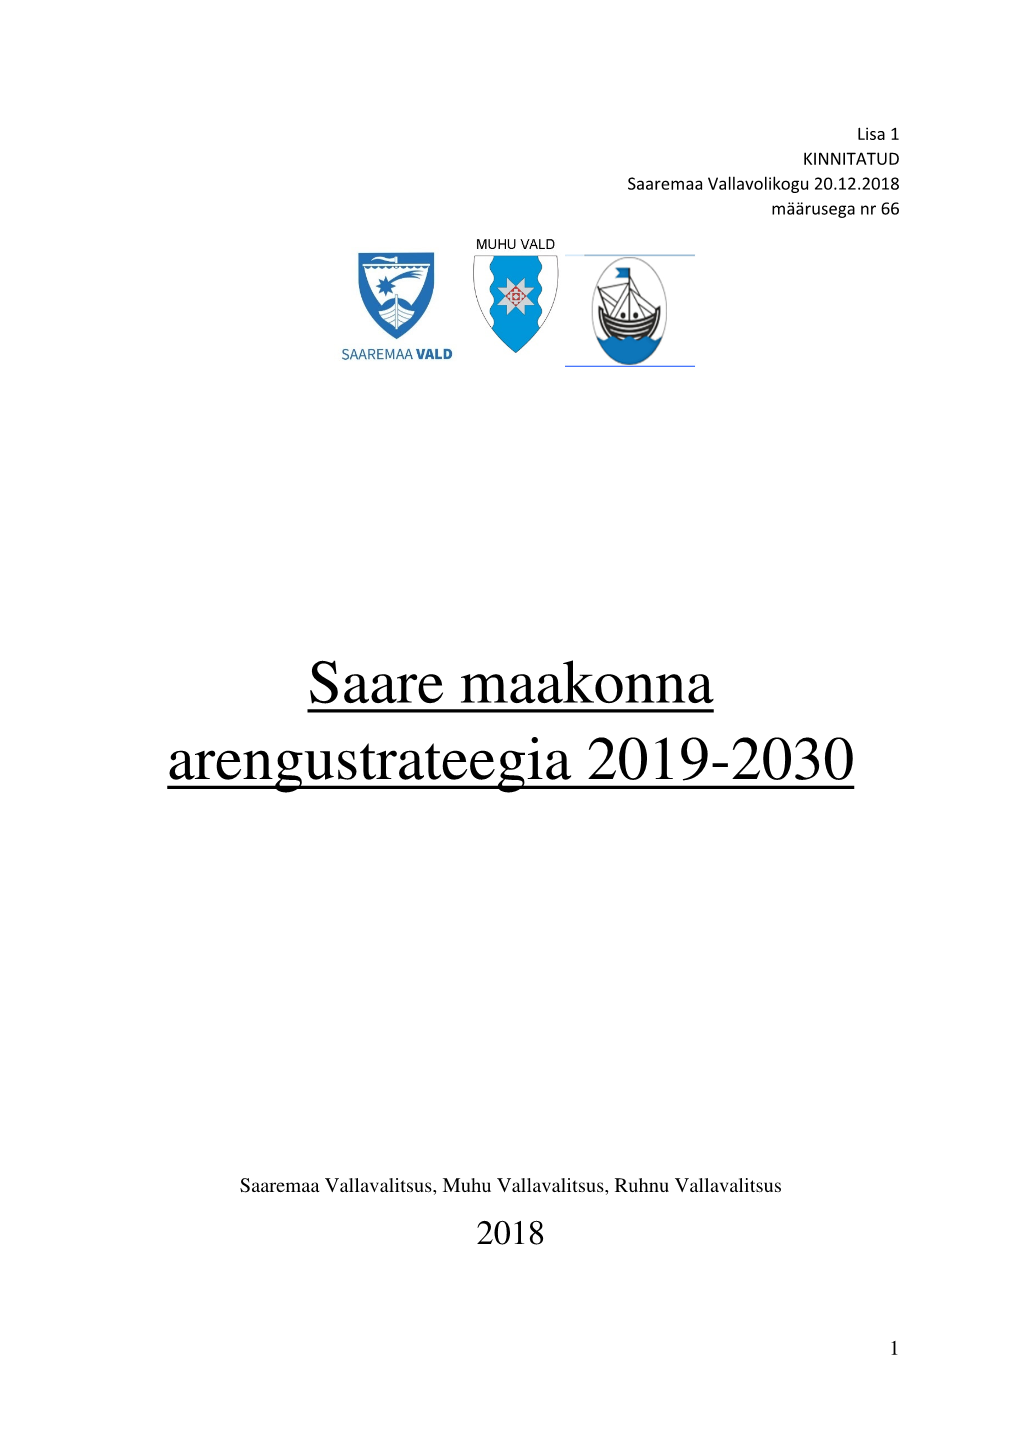 Saare Maakonna Arengustrateegia 2019-2030